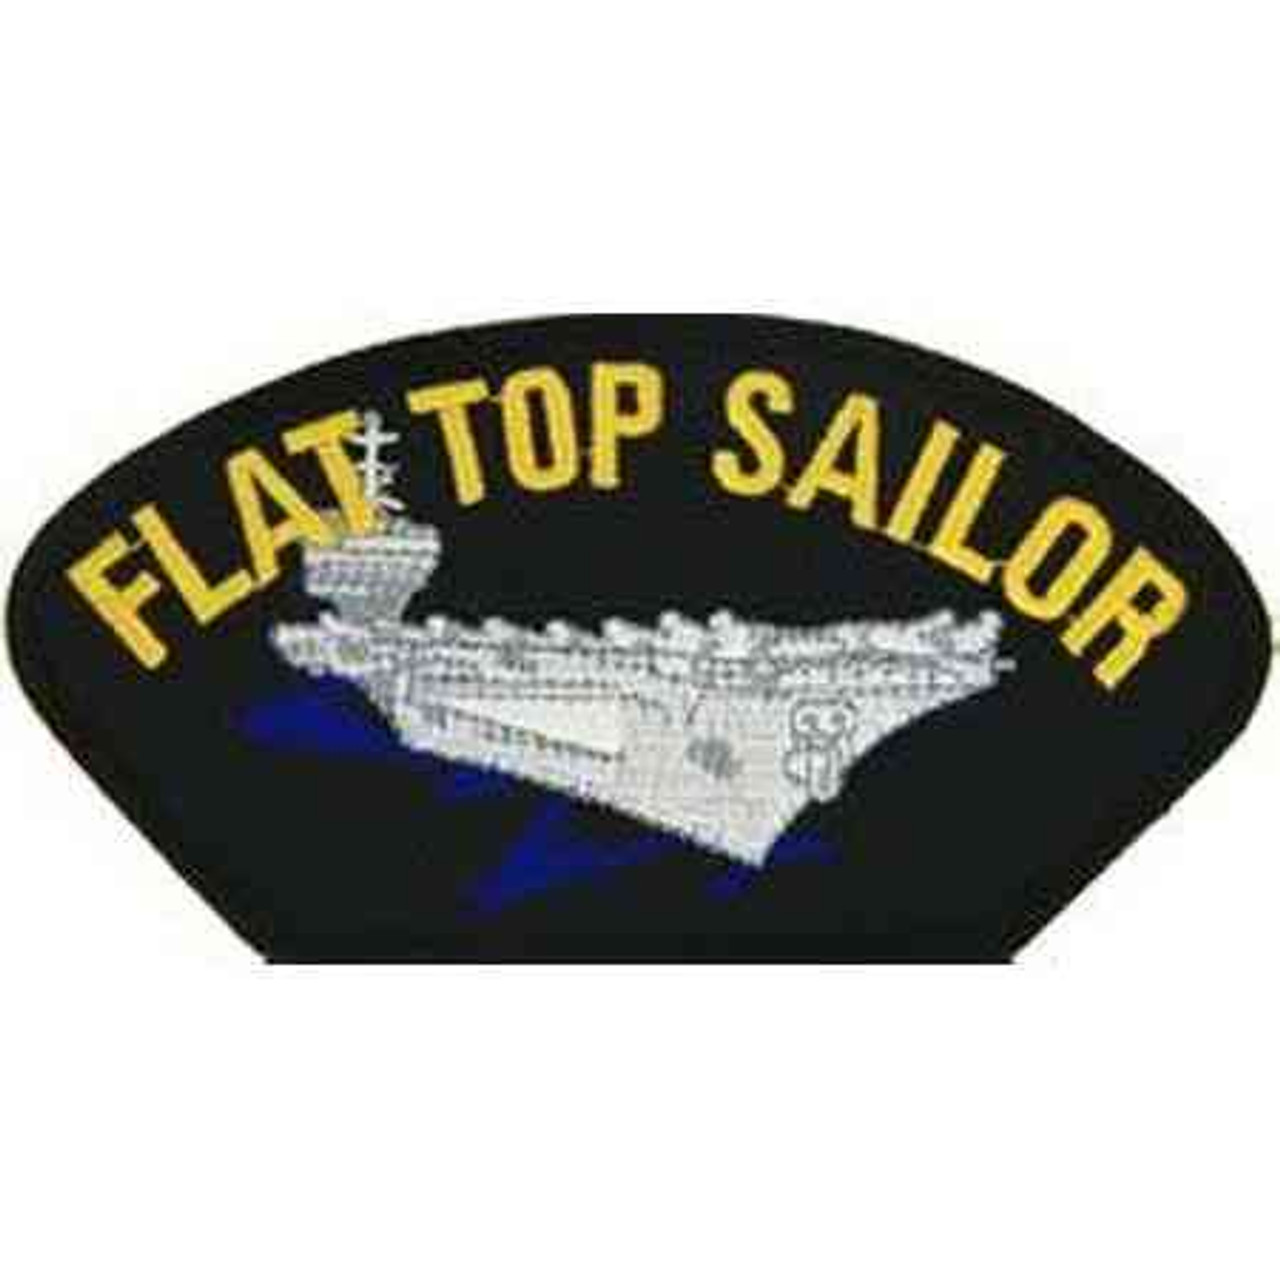 flat top sailor patch